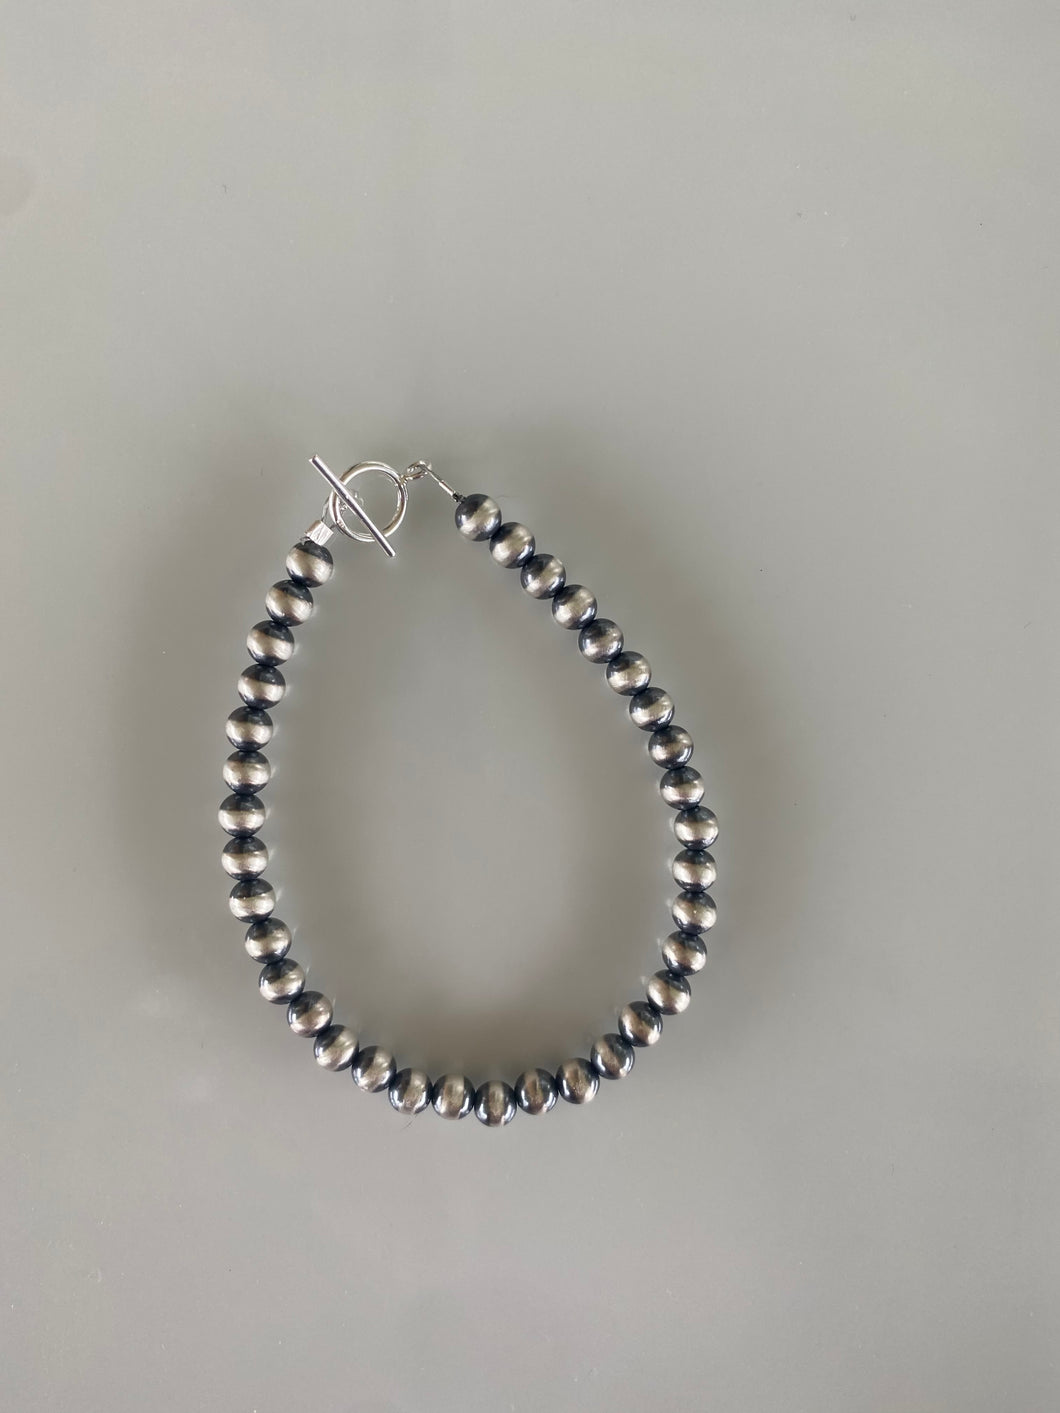 5mm Navajo Pearl bracelet